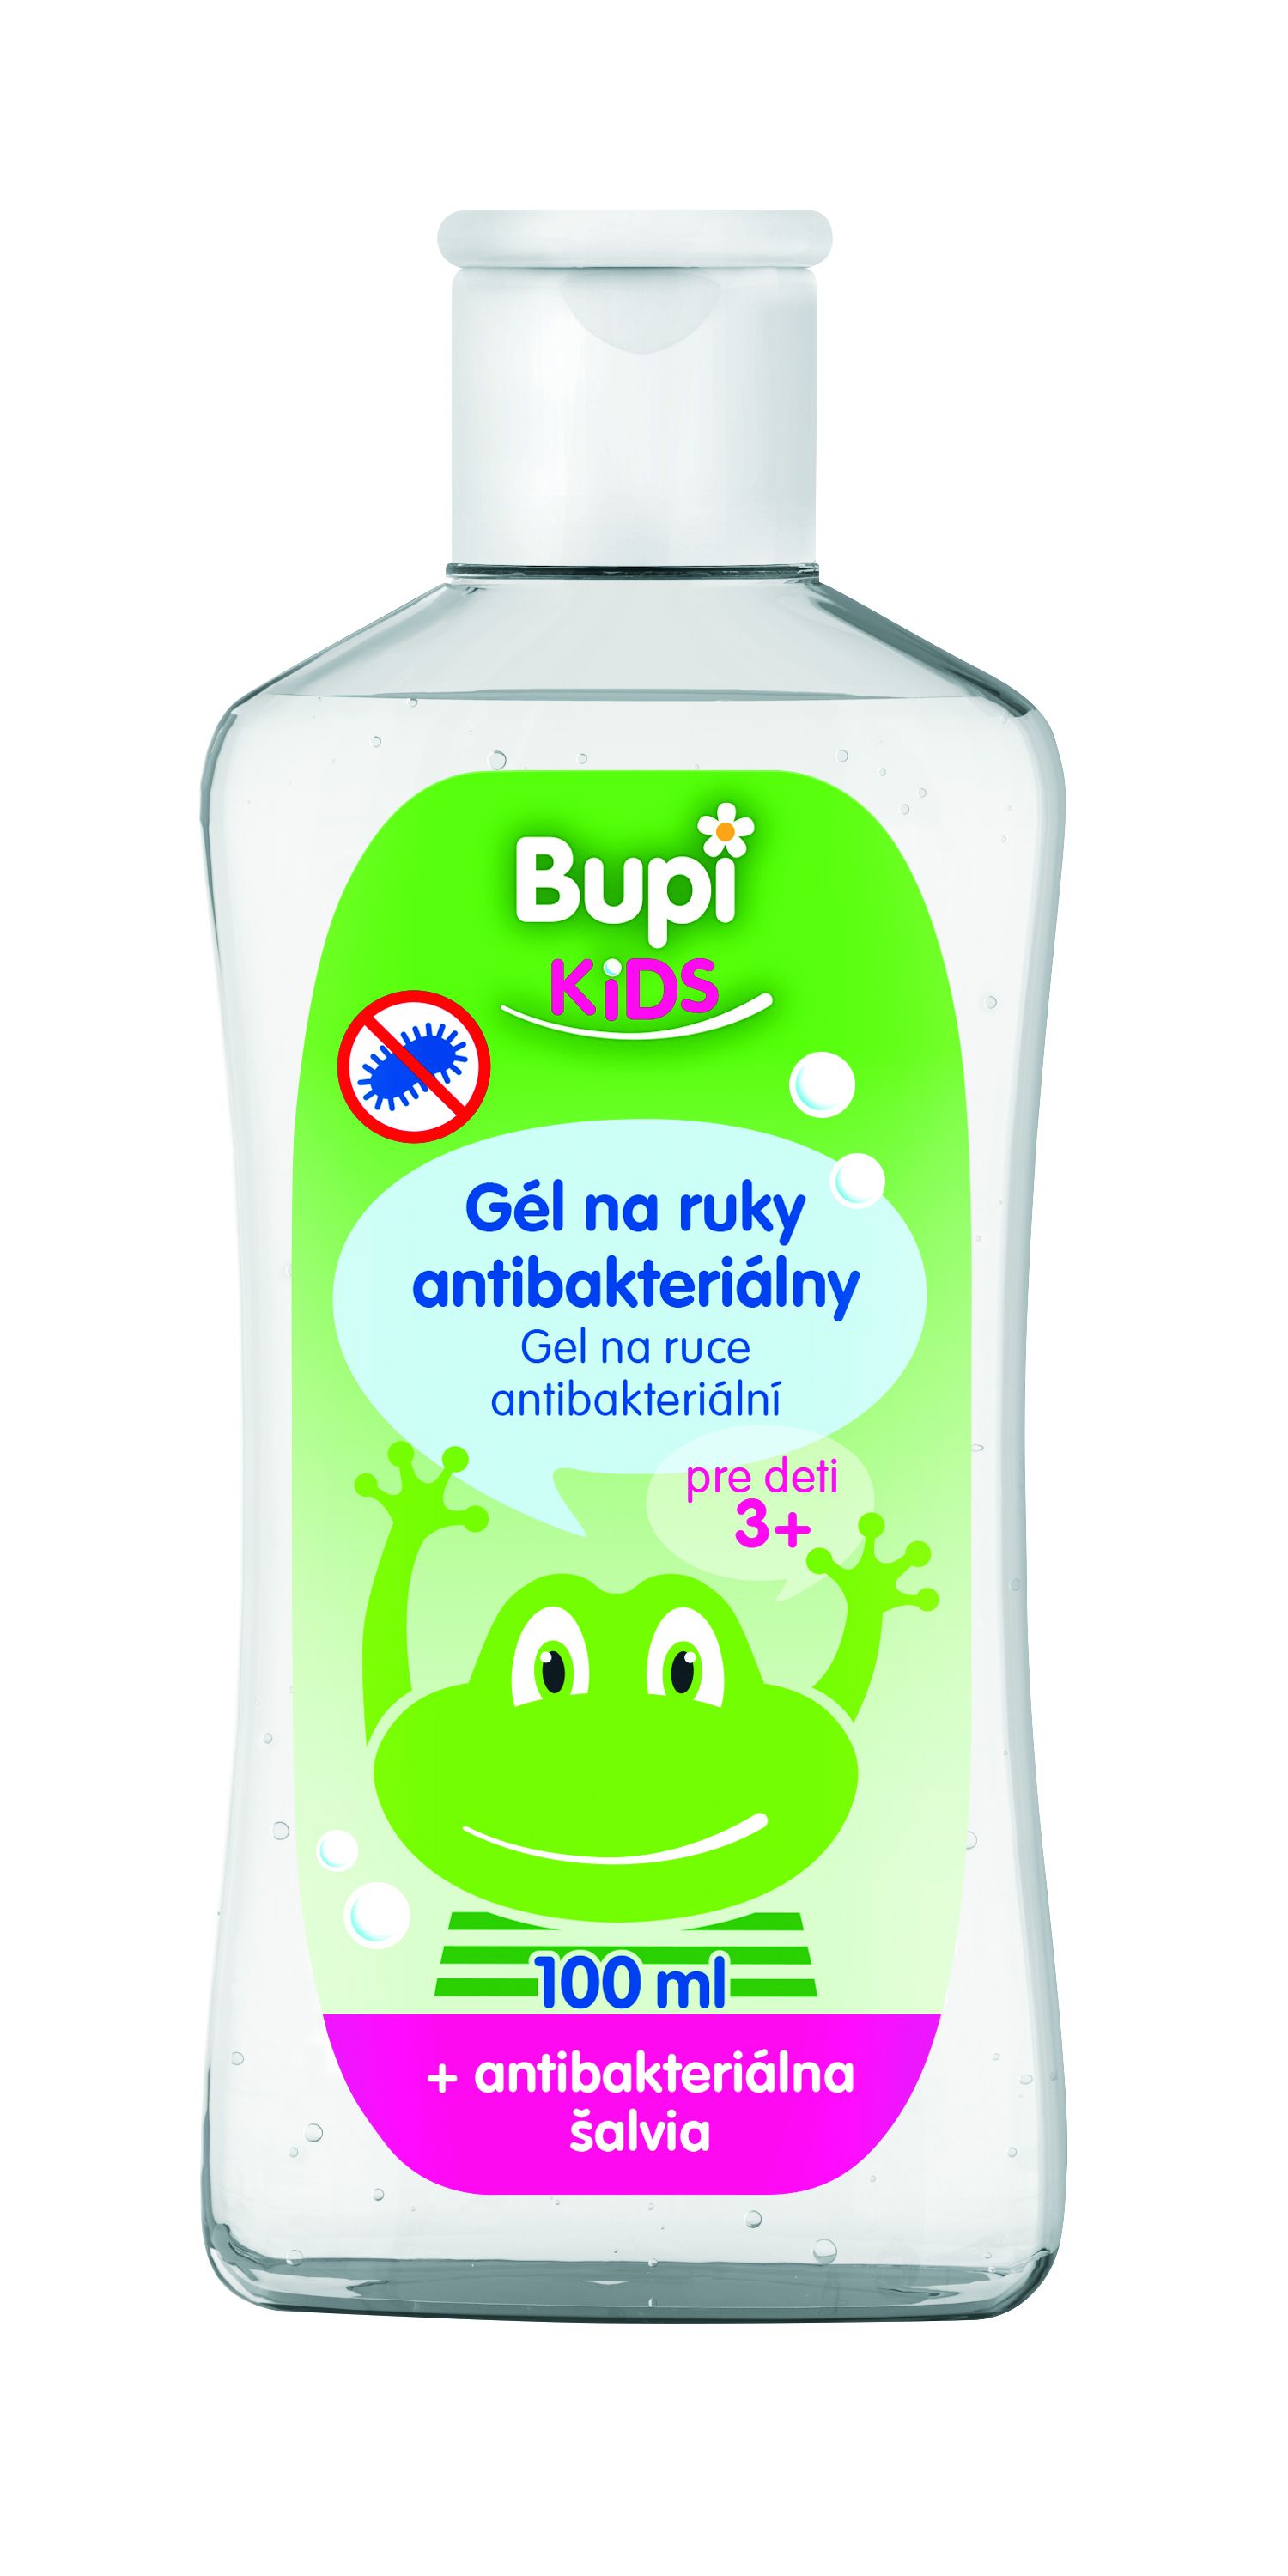 Bupi Kids Antibakteriálny gél šalvia